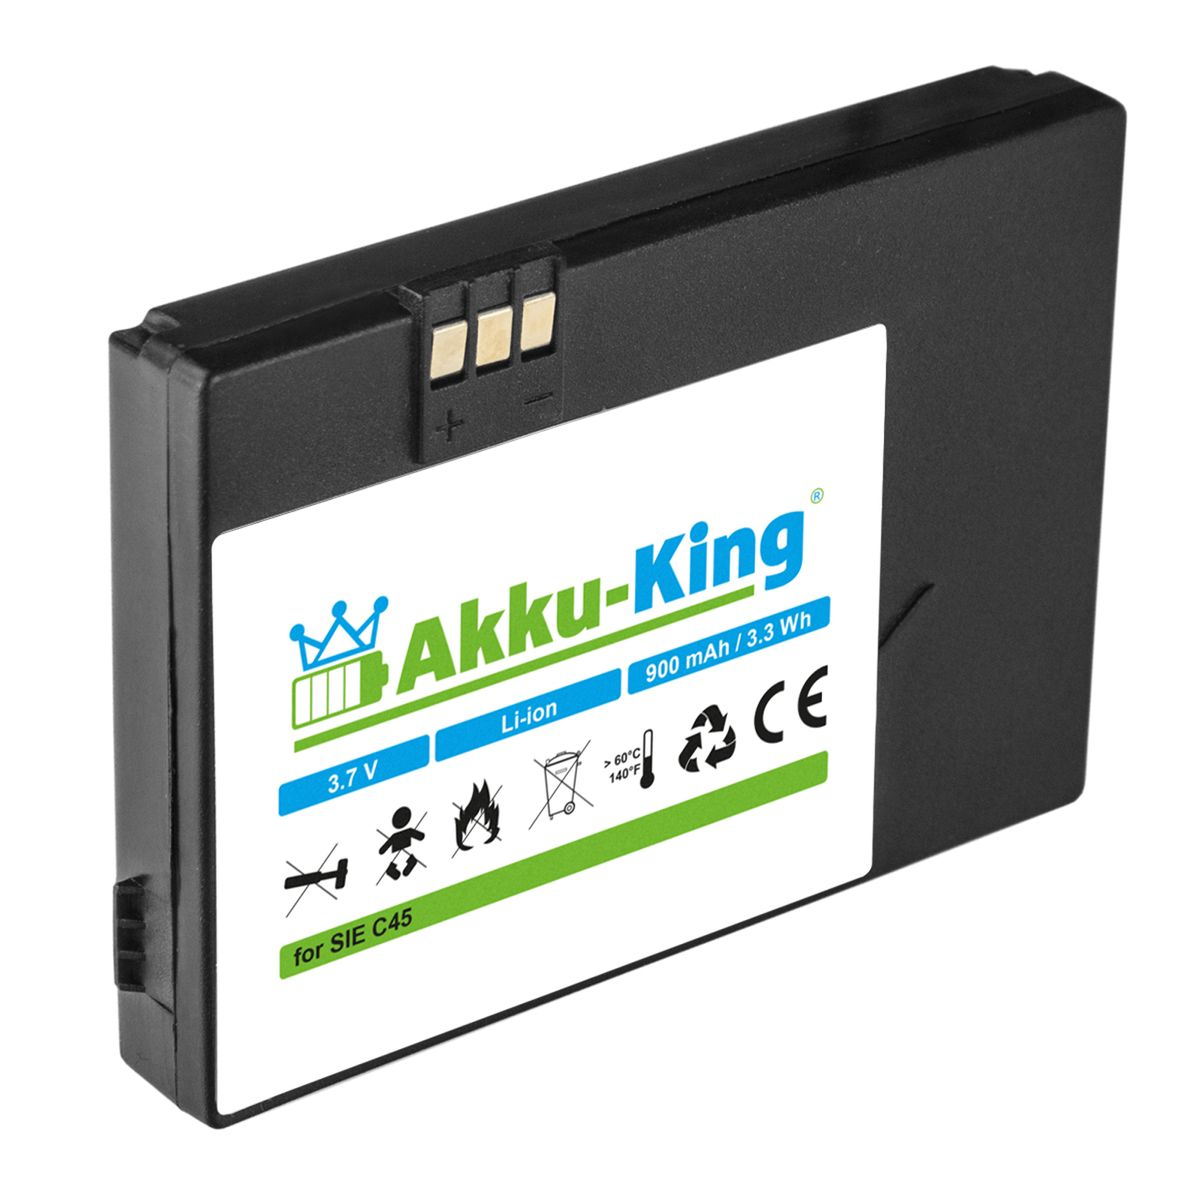 AKKU-KING Akku kompatibel mit Siemens Li-Ion 900mAh V30145-K1310-X213 Handy-Akku, Volt, 3.7